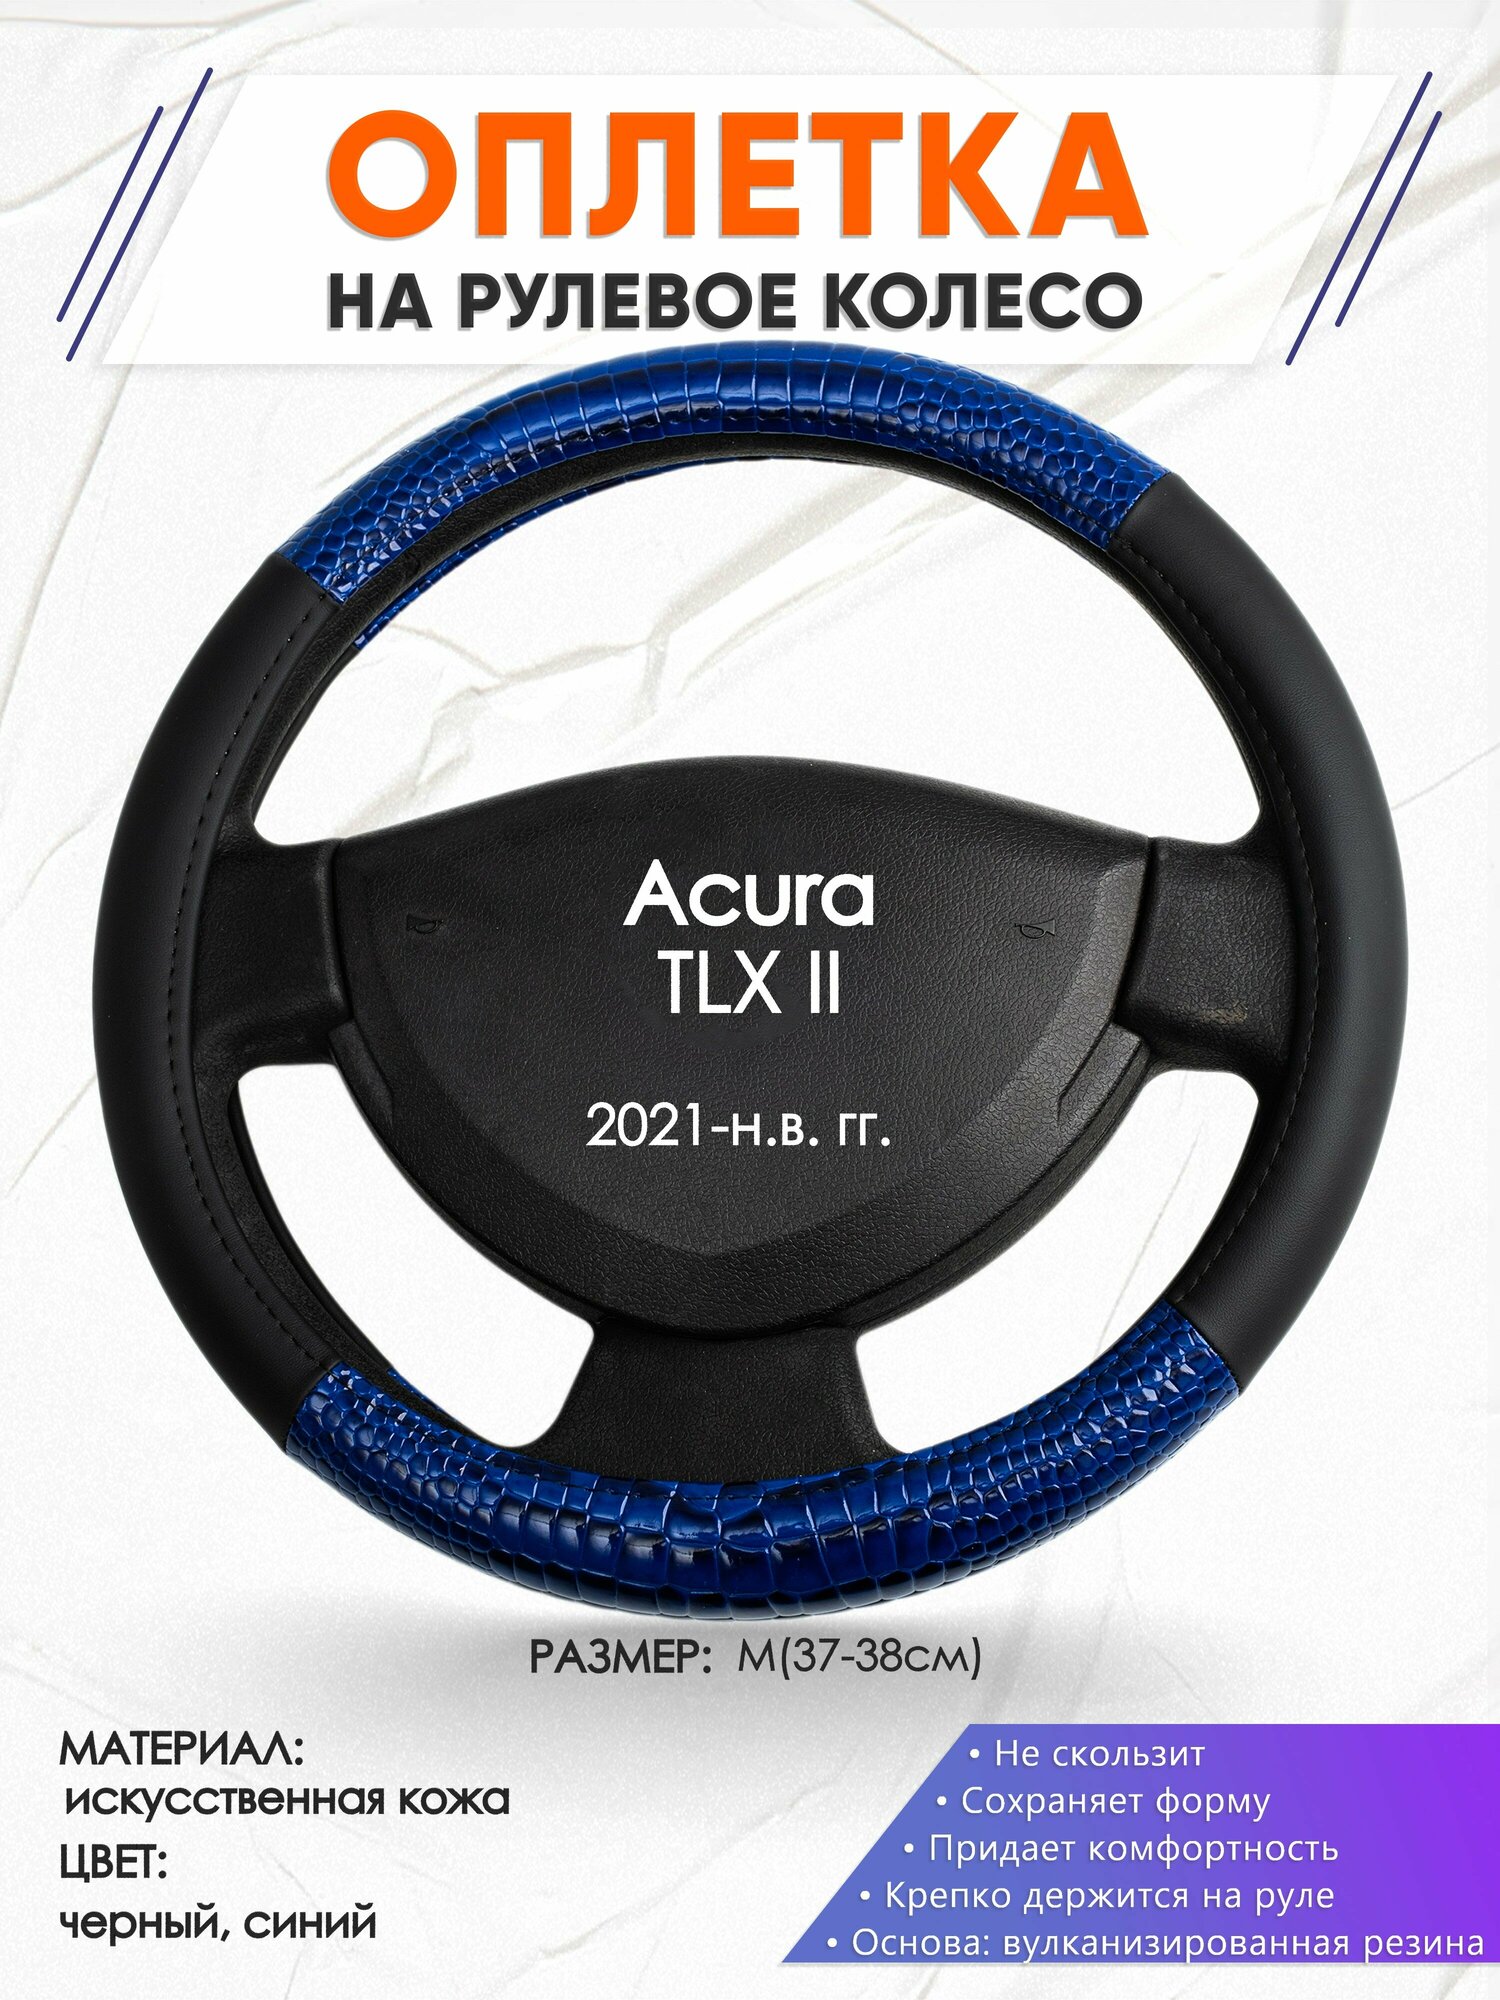 Оплетка наруль для Acura TLX II(Акура ТЛХ 2) 2021-н. в. годов выпуска, размер M(37-38см), Искусственная кожа 82